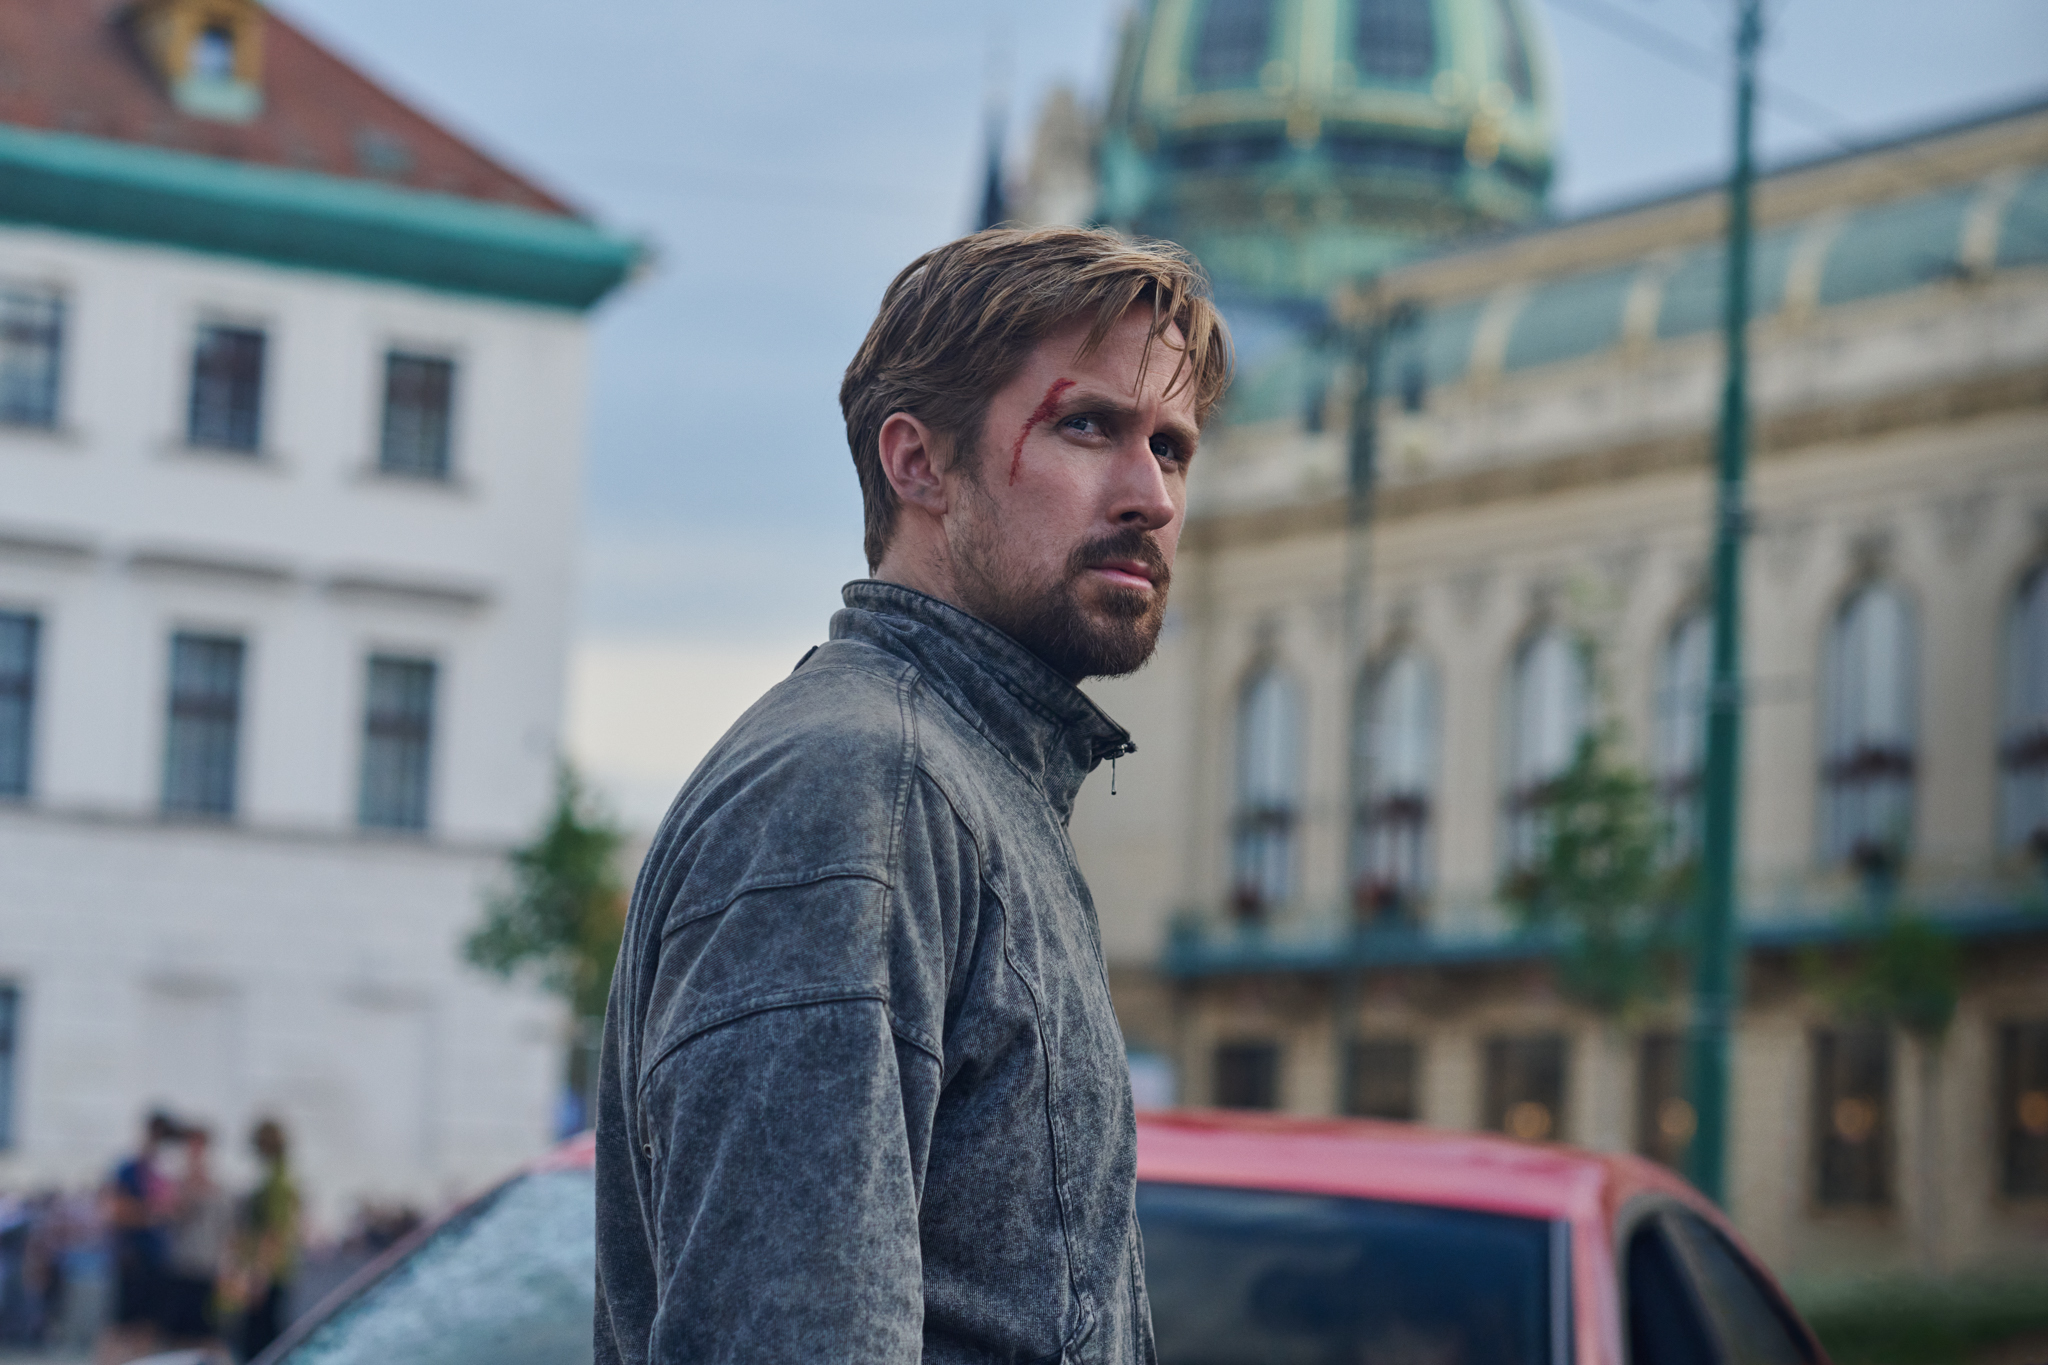 Todo sobre ‘El hombre gris’, lo nuevo de Ryan Gosling para Netflix